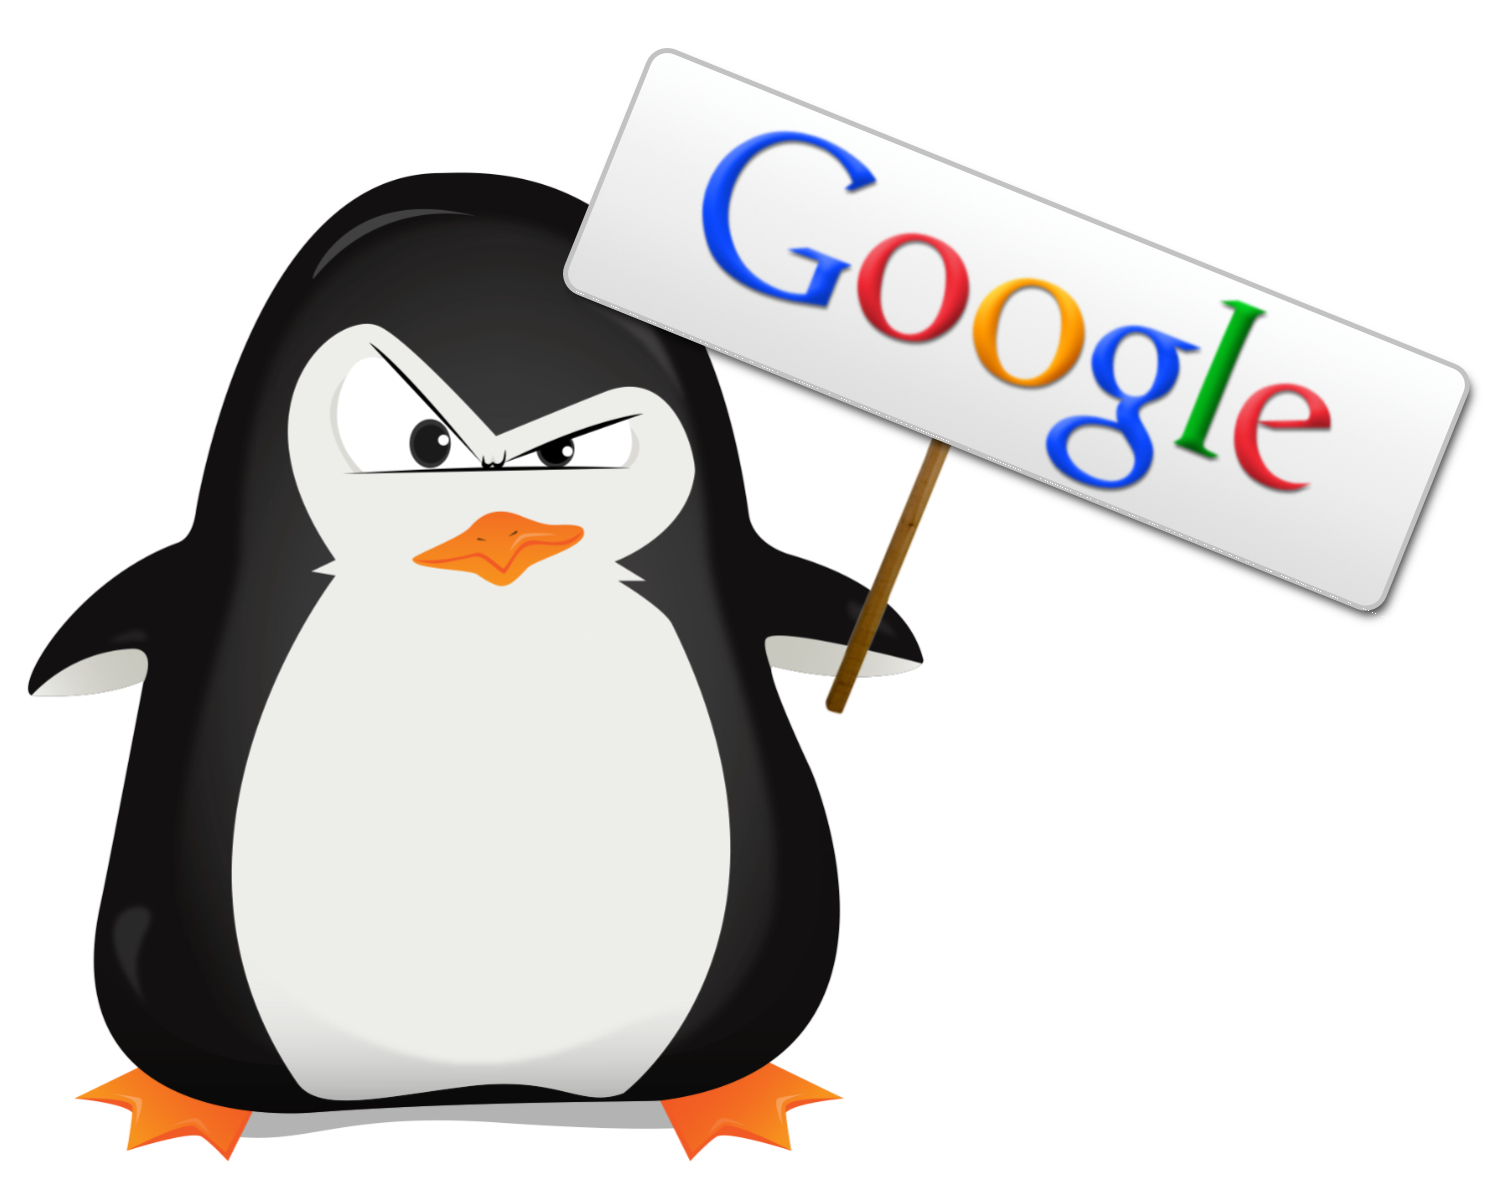 Гугл картинки. Пингвин. Злой Пингвин. Google Пингвин. Google картинки.